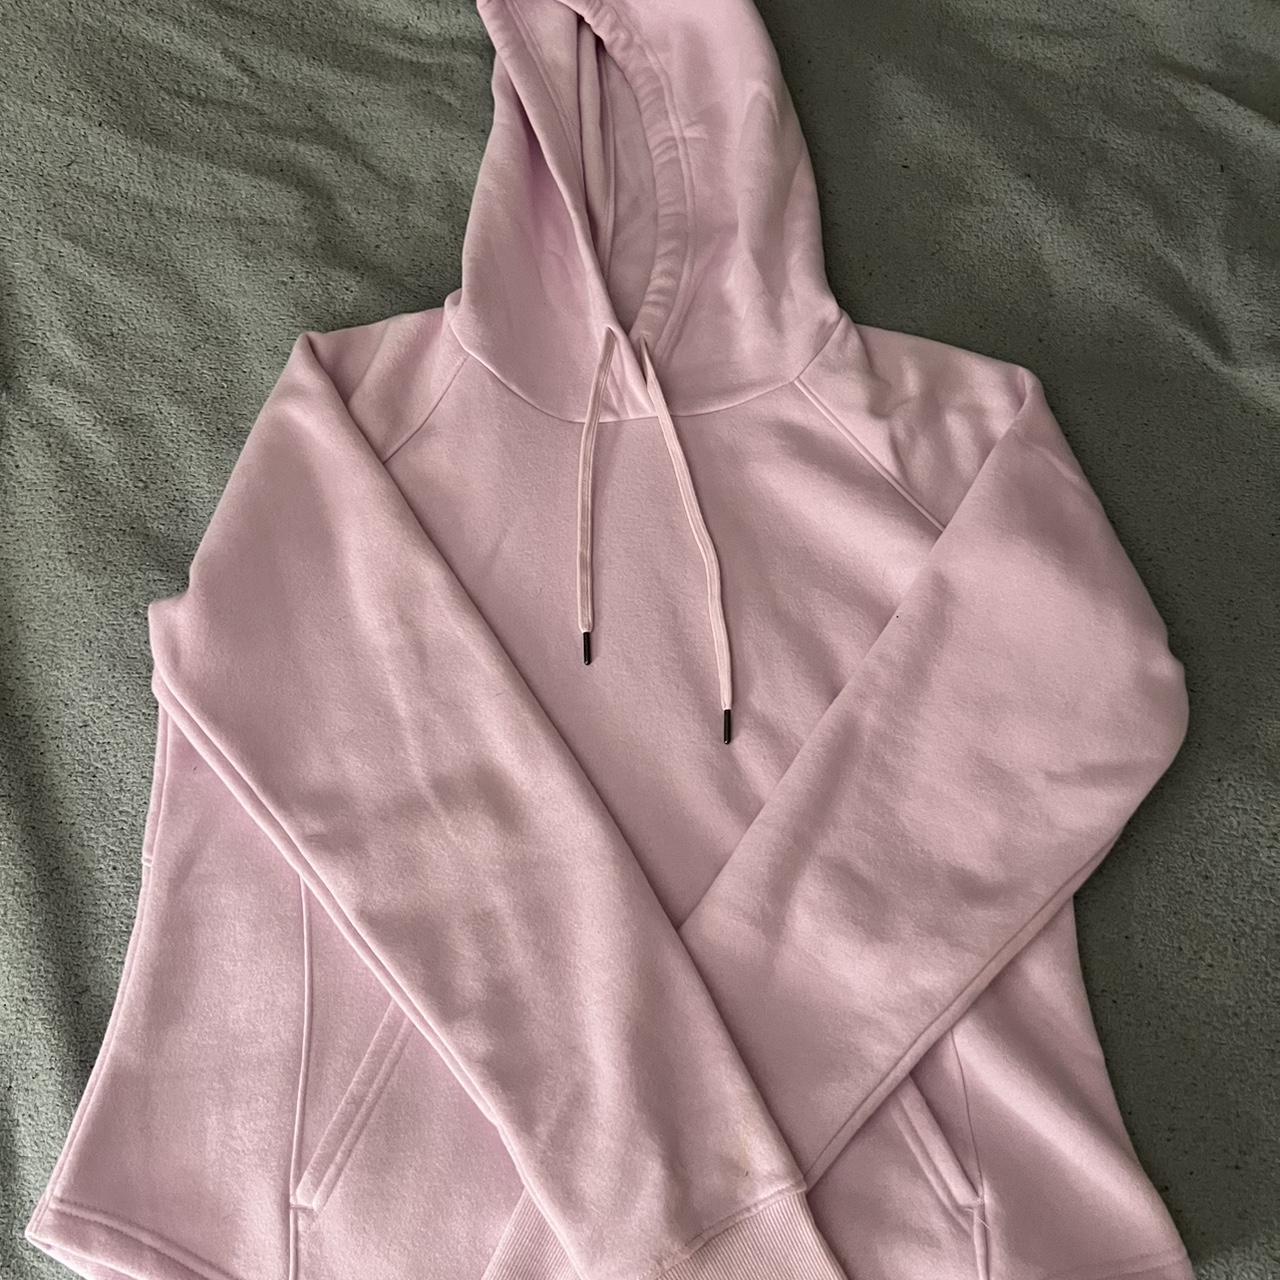 plain pink Tek Gear sweatshirt never work - Depop